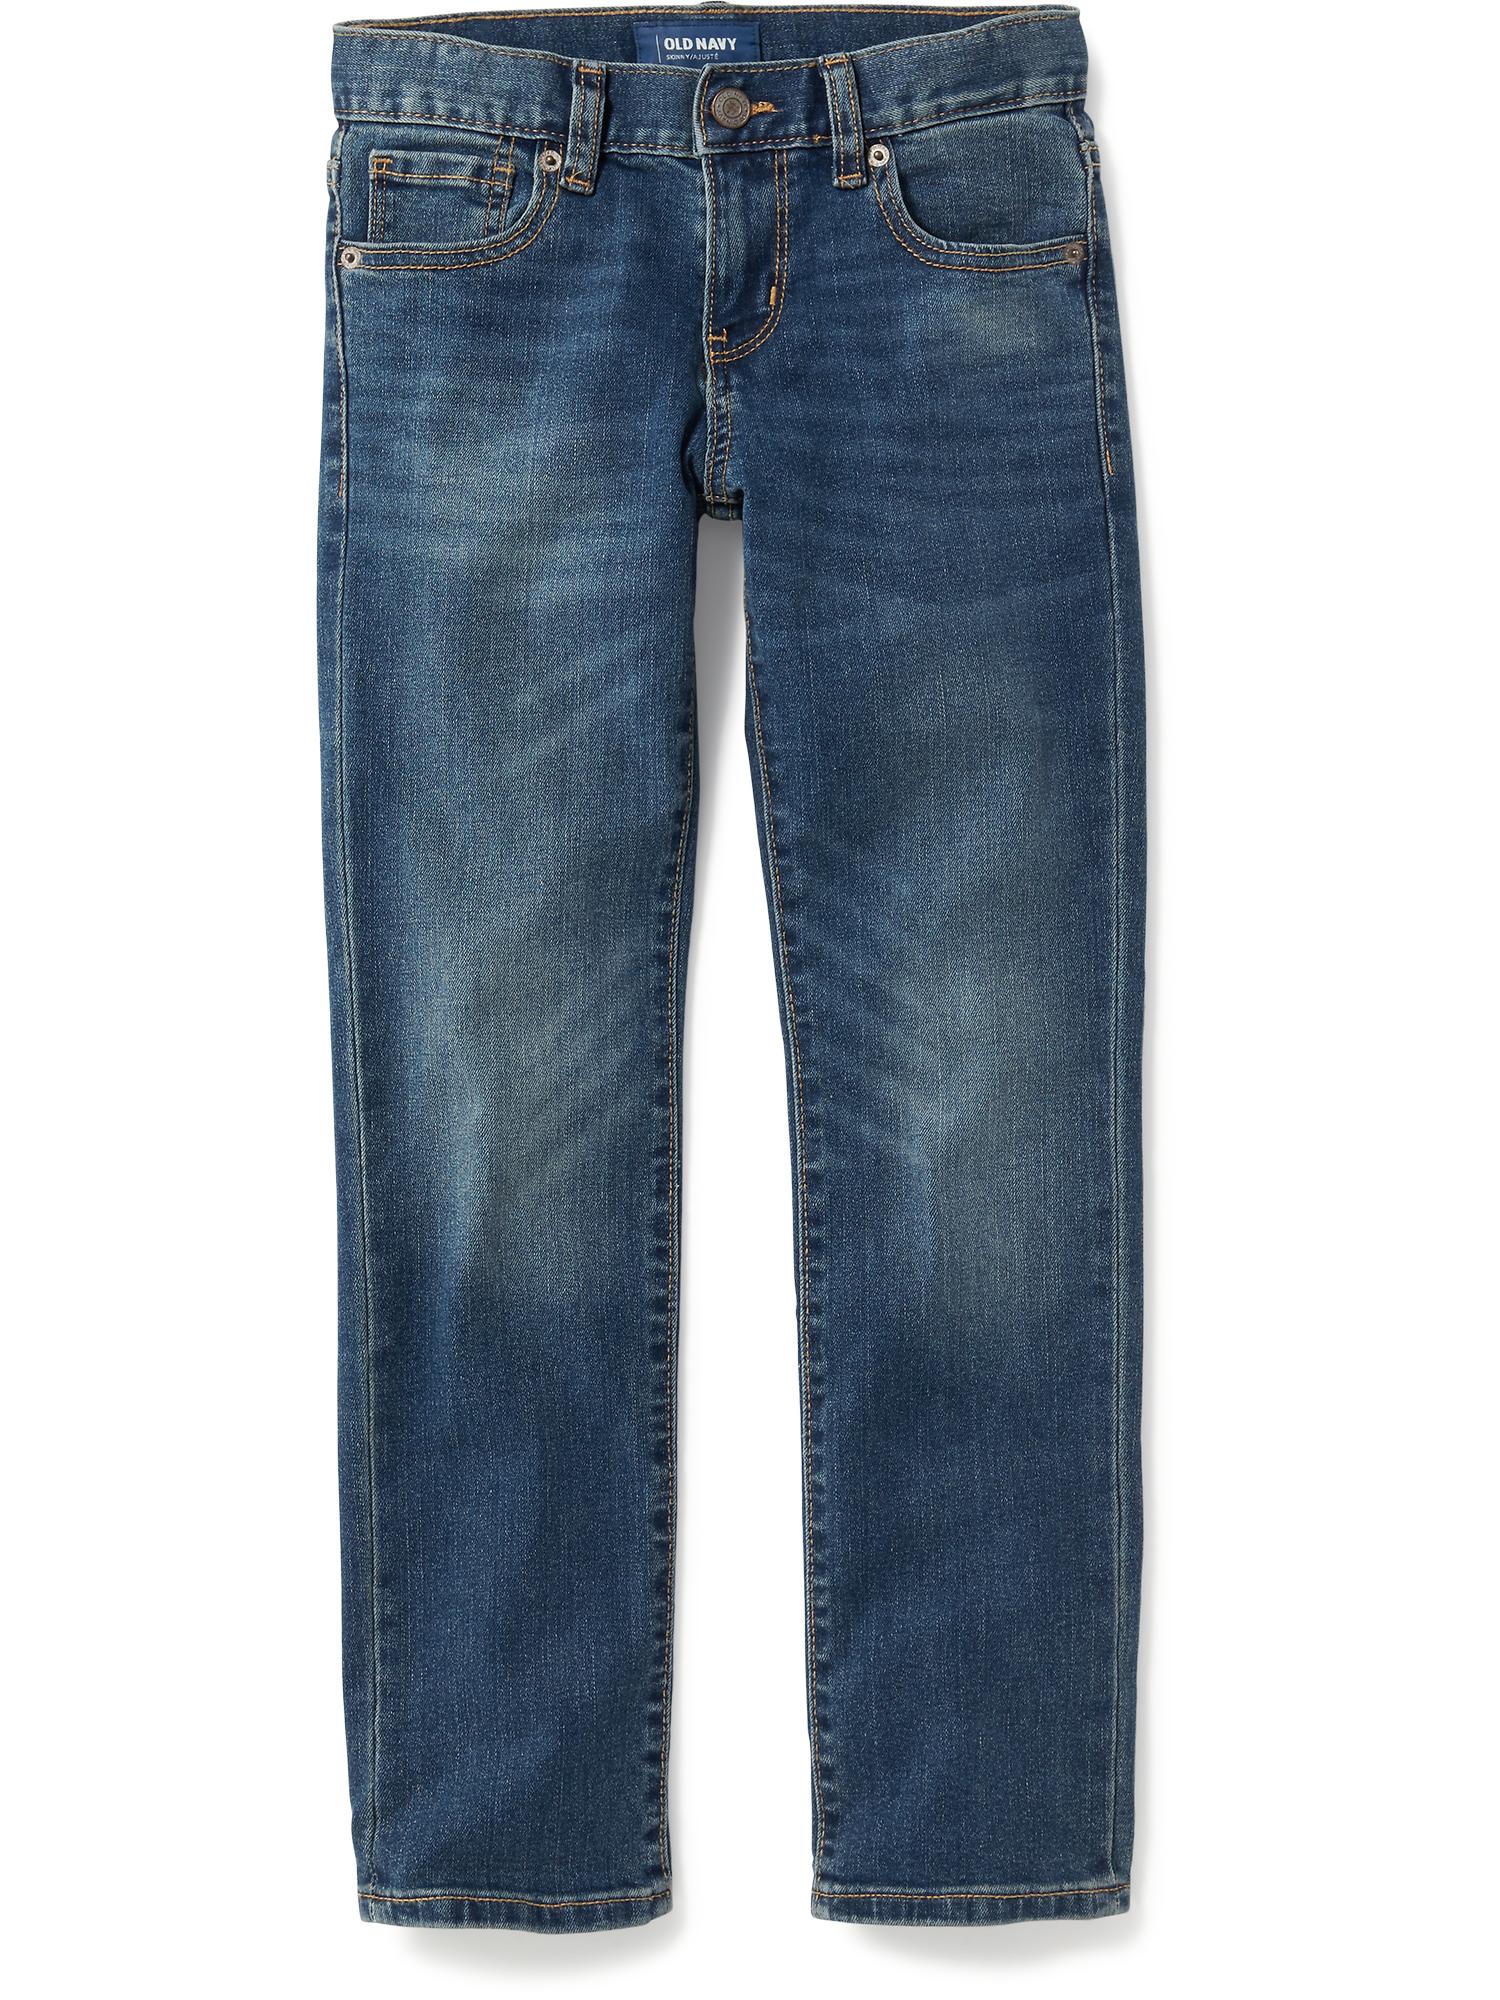 gap jeans est 1969